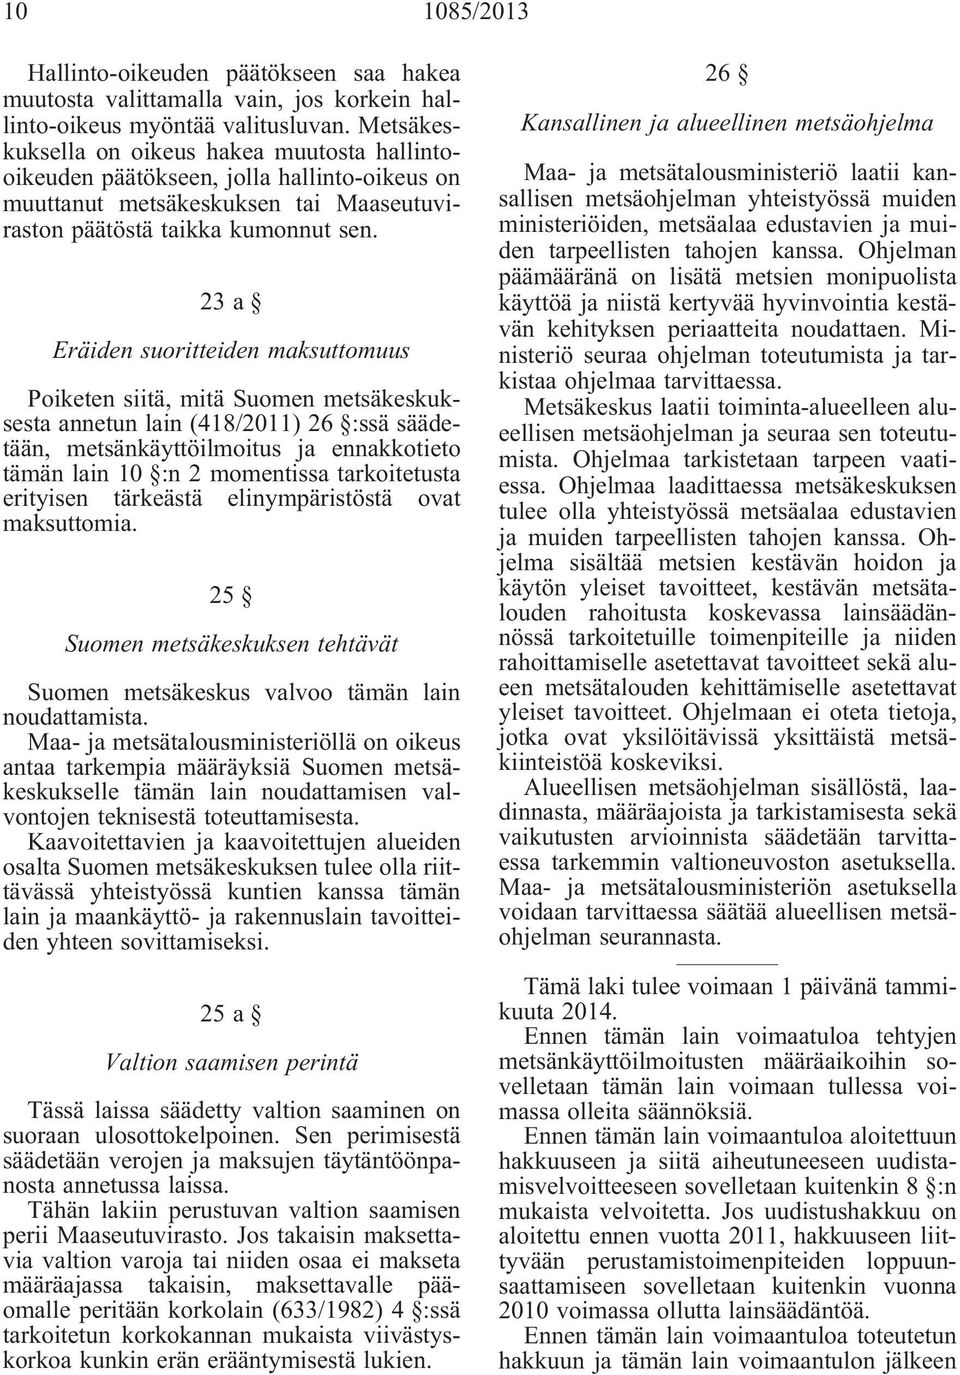 23 a Eräiden suoritteiden maksuttomuus Poiketen siitä, mitä Suomen metsäkeskuksesta annetun lain (418/2011) 26 :ssä säädetään, metsänkäyttöilmoitus ja ennakkotieto tämän lain 10 :n 2 momentissa